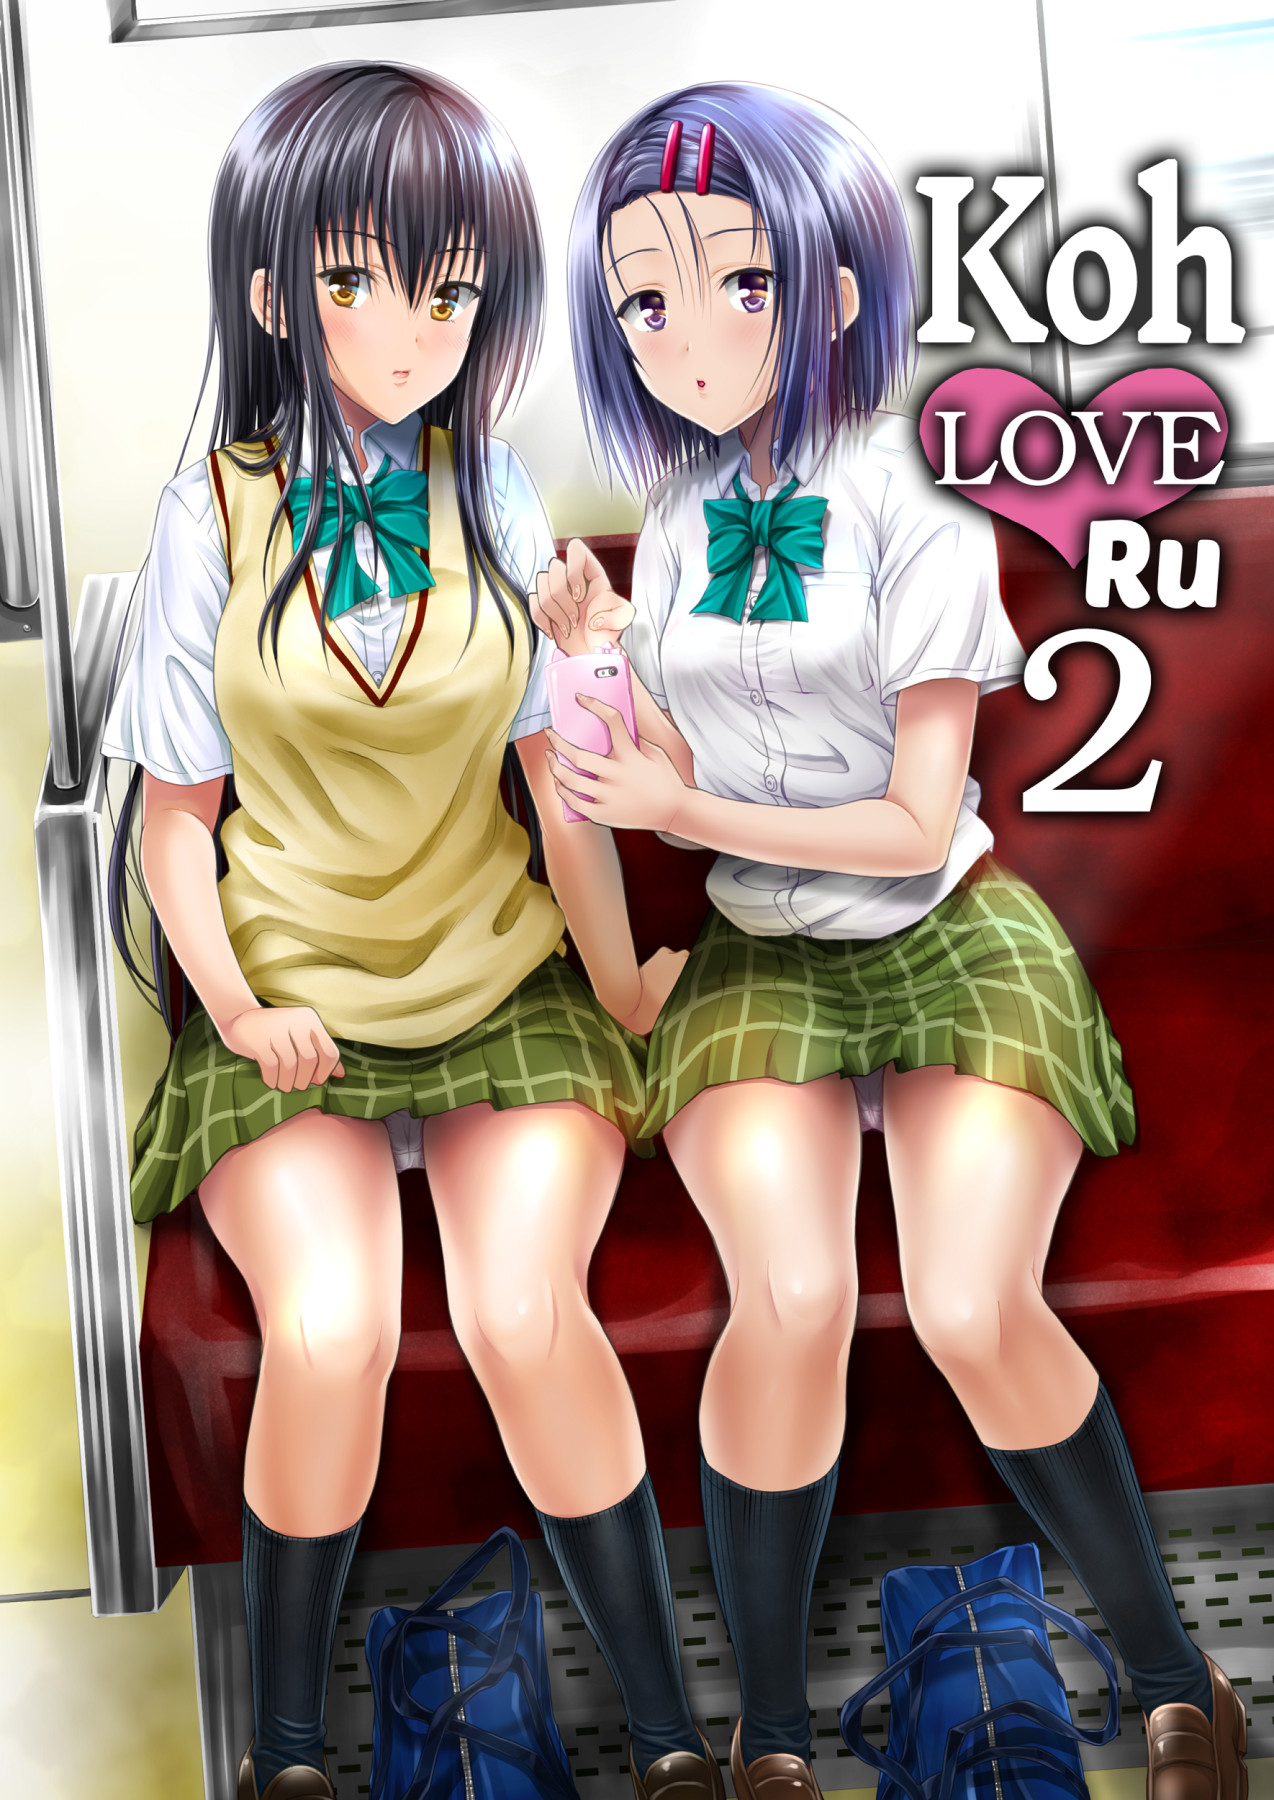 Hentai Manga Comic-Koh LOVE-Ru 2-Read-1